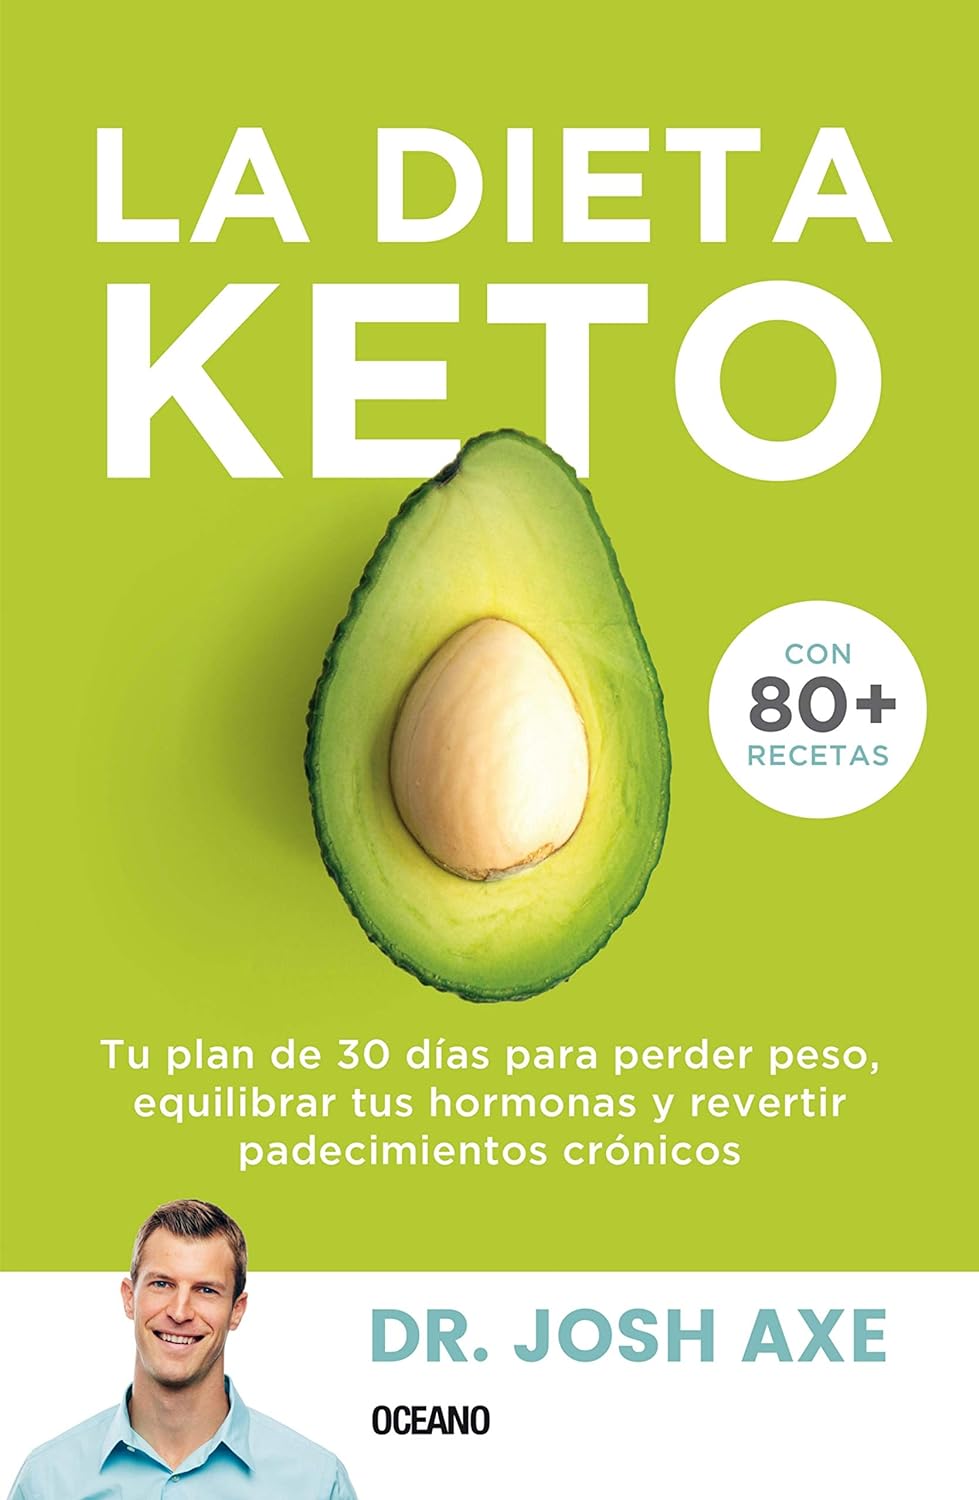 Marissa's Books & Gifts, LLC 9786075279749 Paperback La Dieta Keto: Tu plan de 30 días para perder peso, equilibrar tus hormonas y revertir padecimientos crónicos (Spanish Edition)